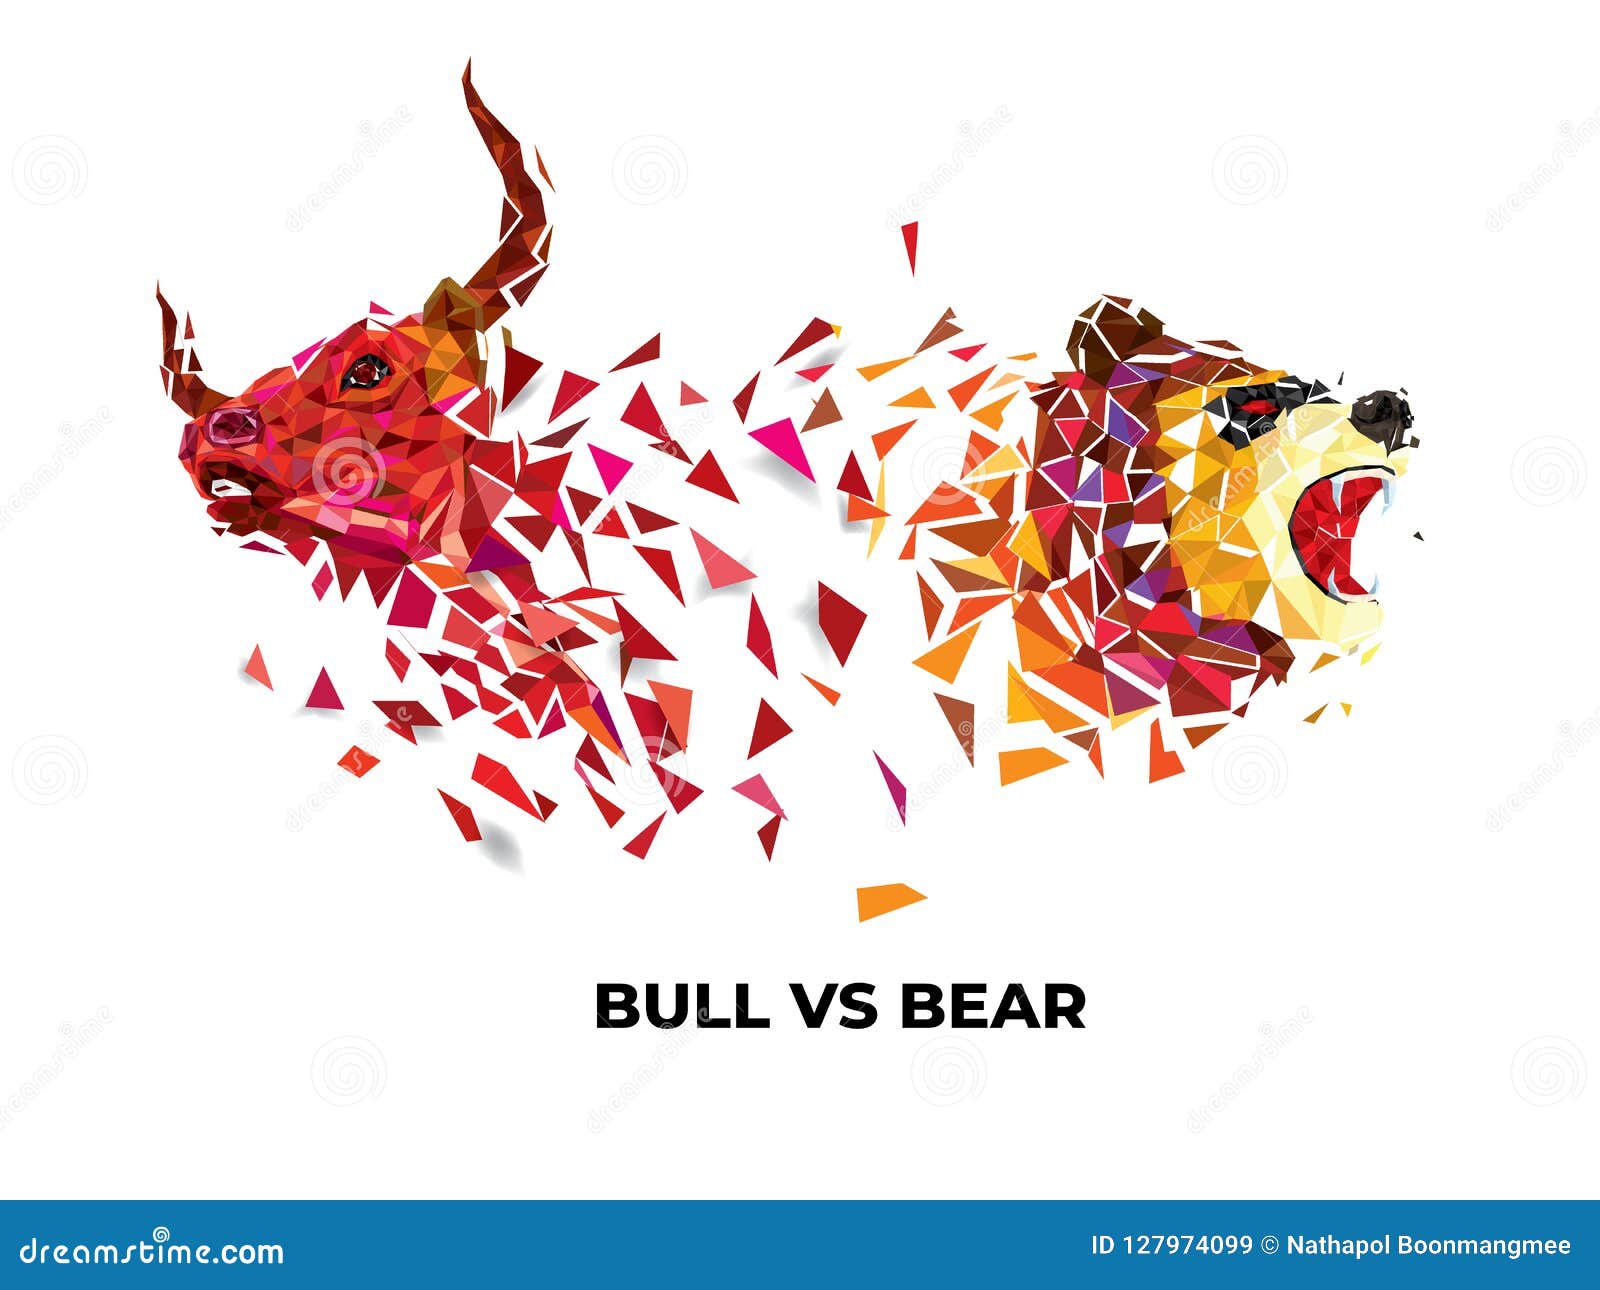 Details more than 74 bull vs bear tattoo best  thtantai2